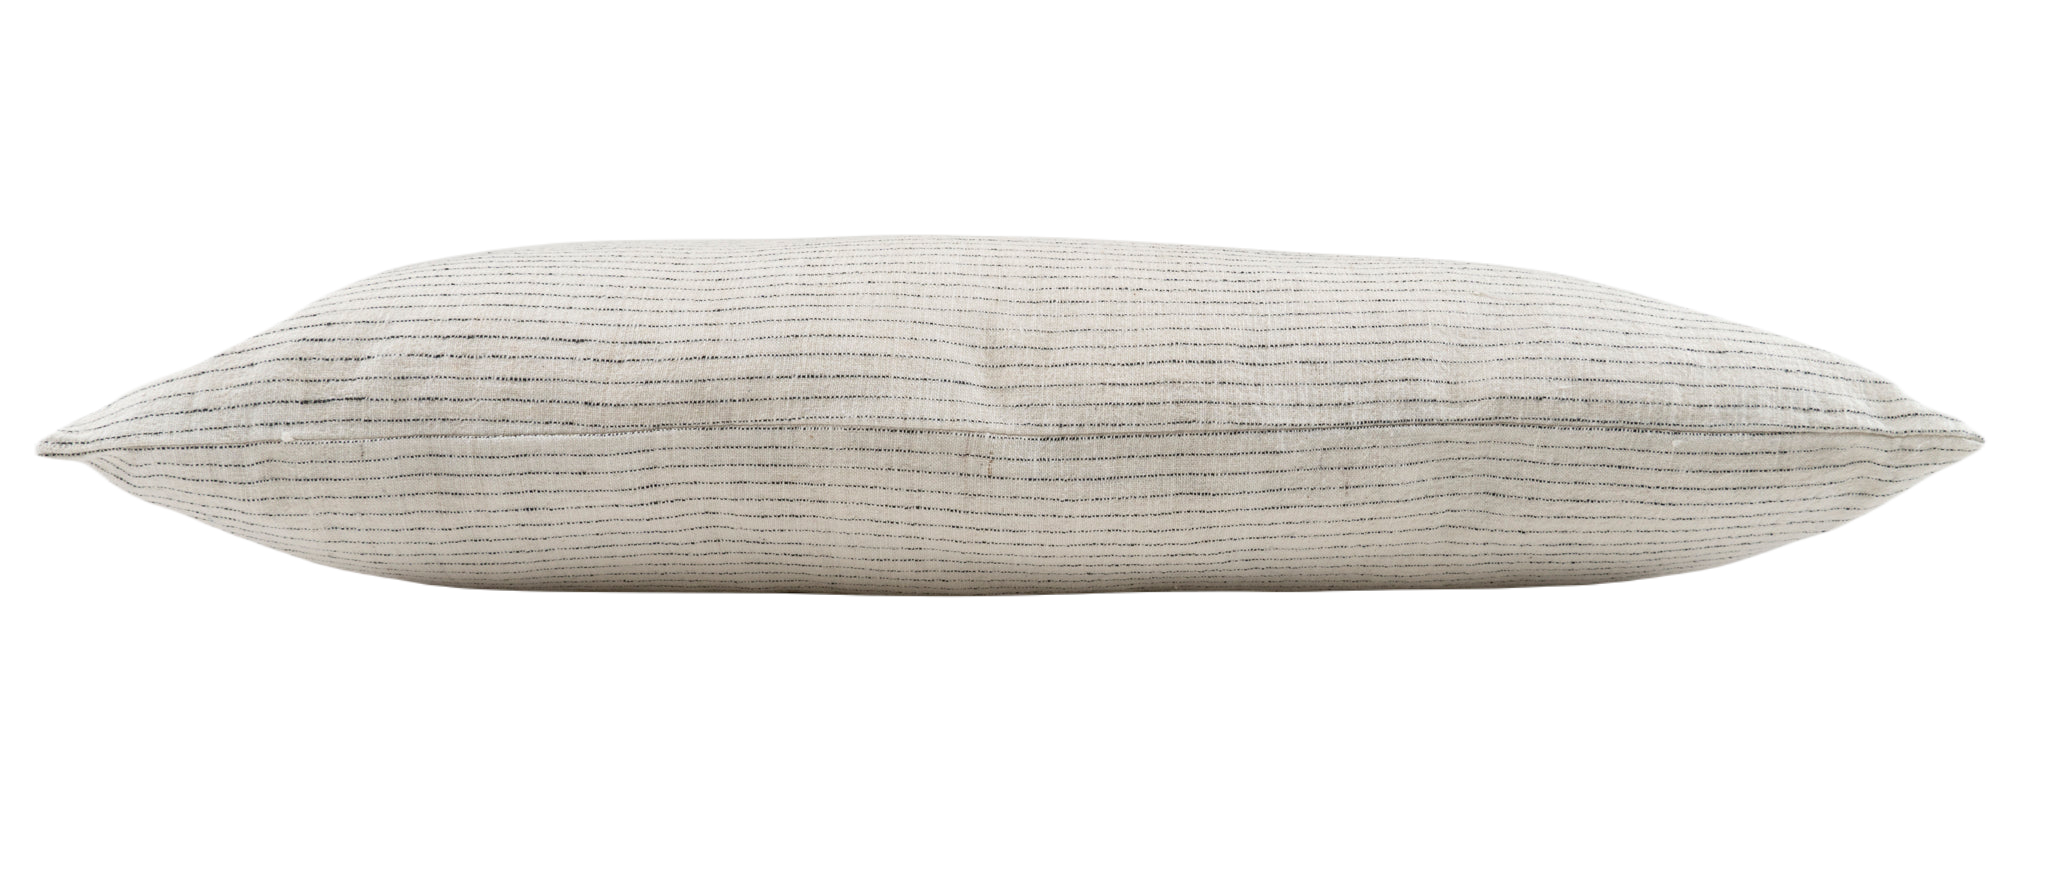 Pillow: Hand woven antique Bulgarian cotton - P262